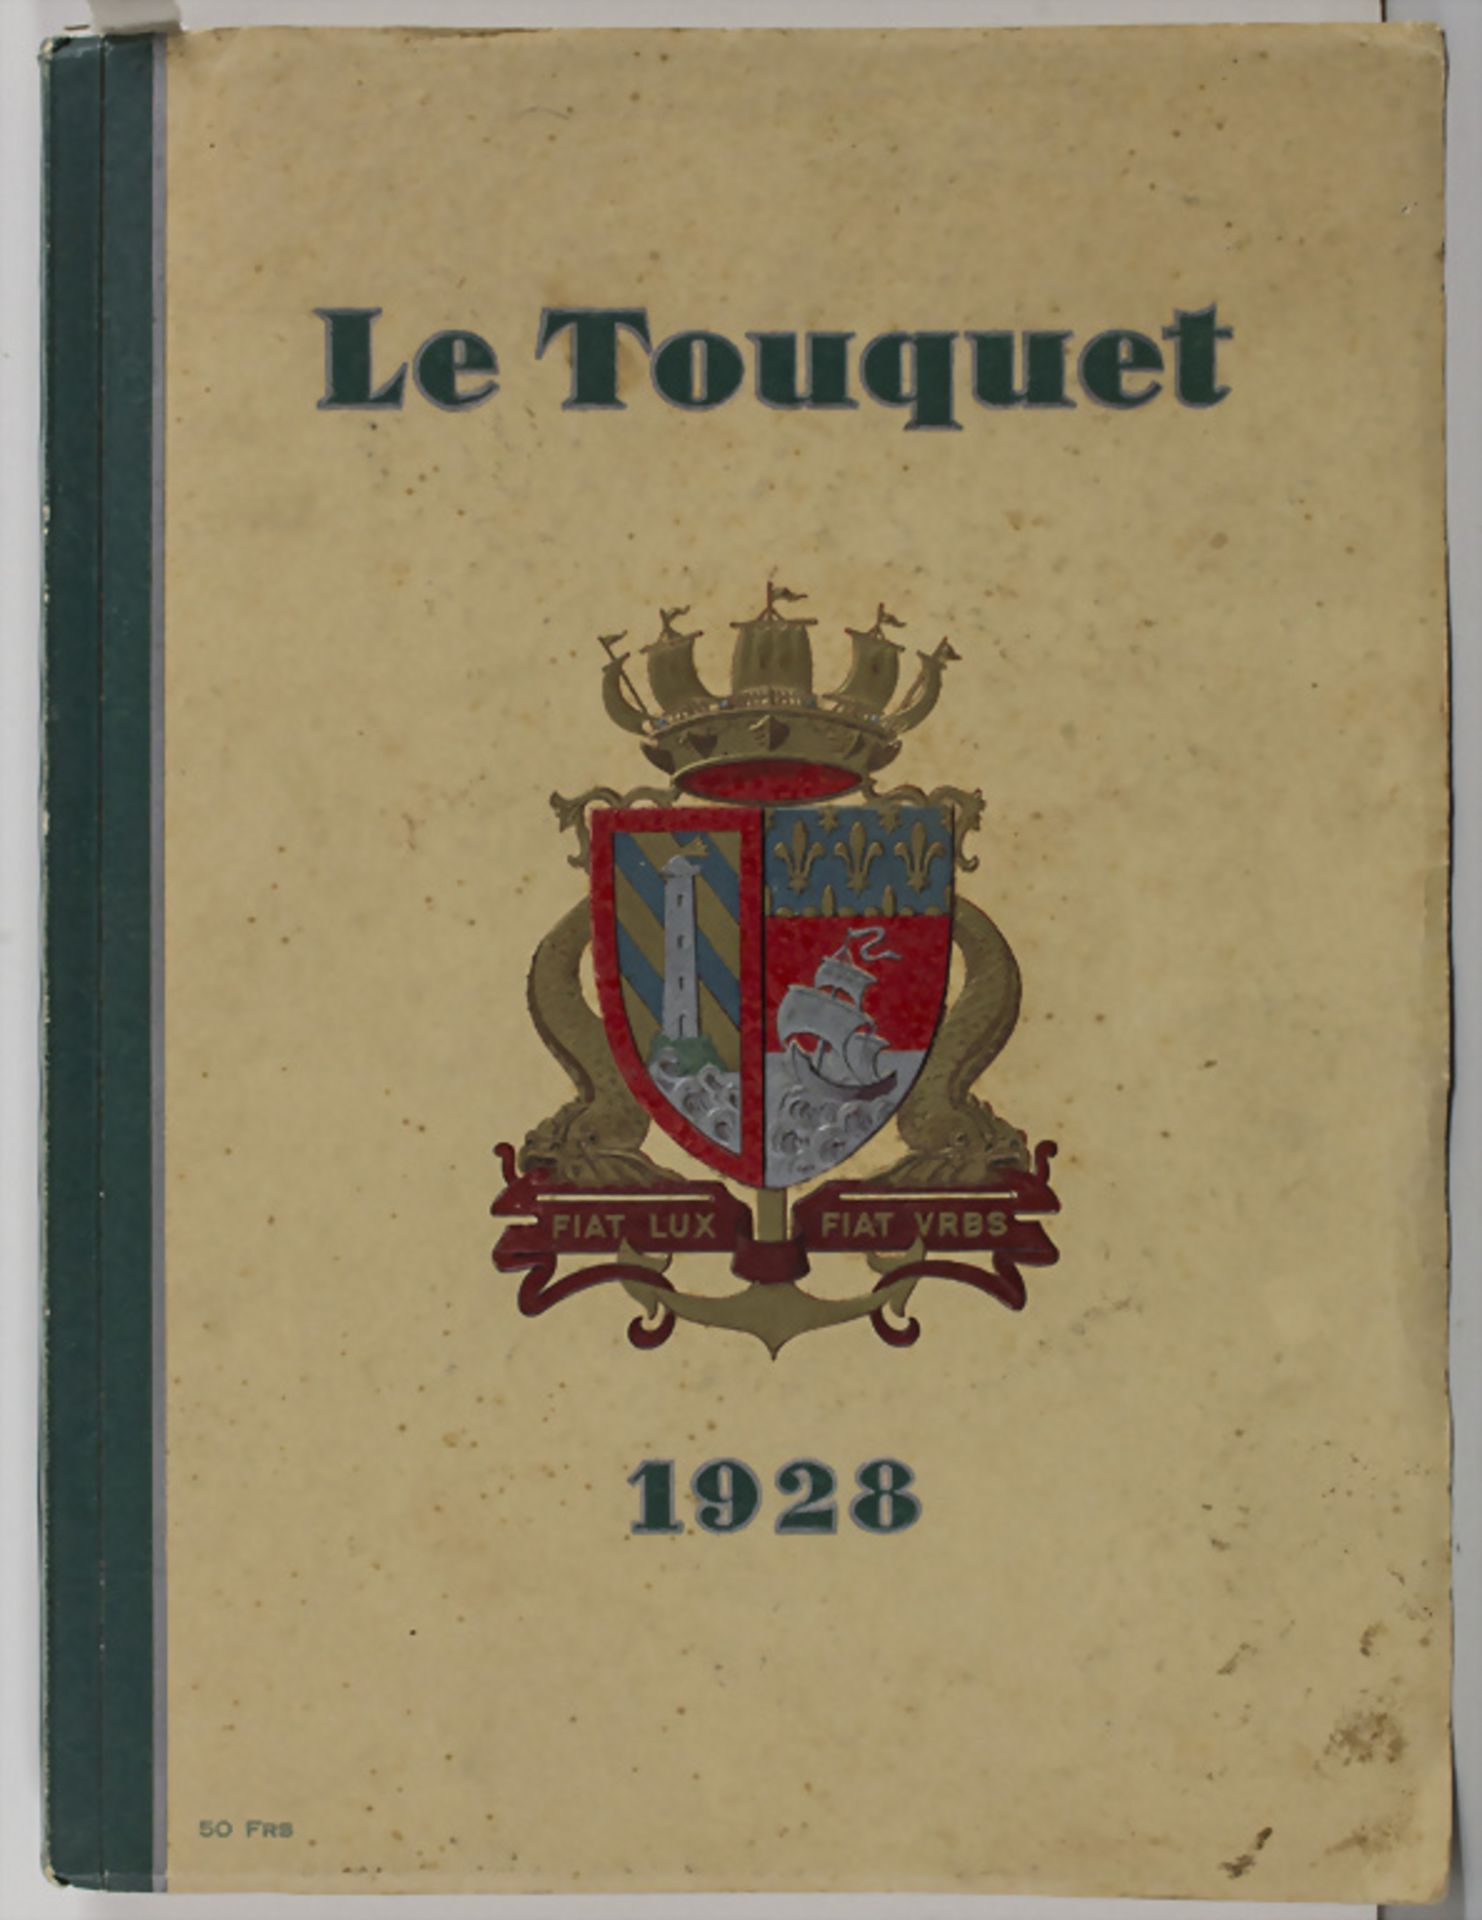 Art Déco Bildband, Le Touquet: 1928 / An illustrated book '1928', Paris, 1928